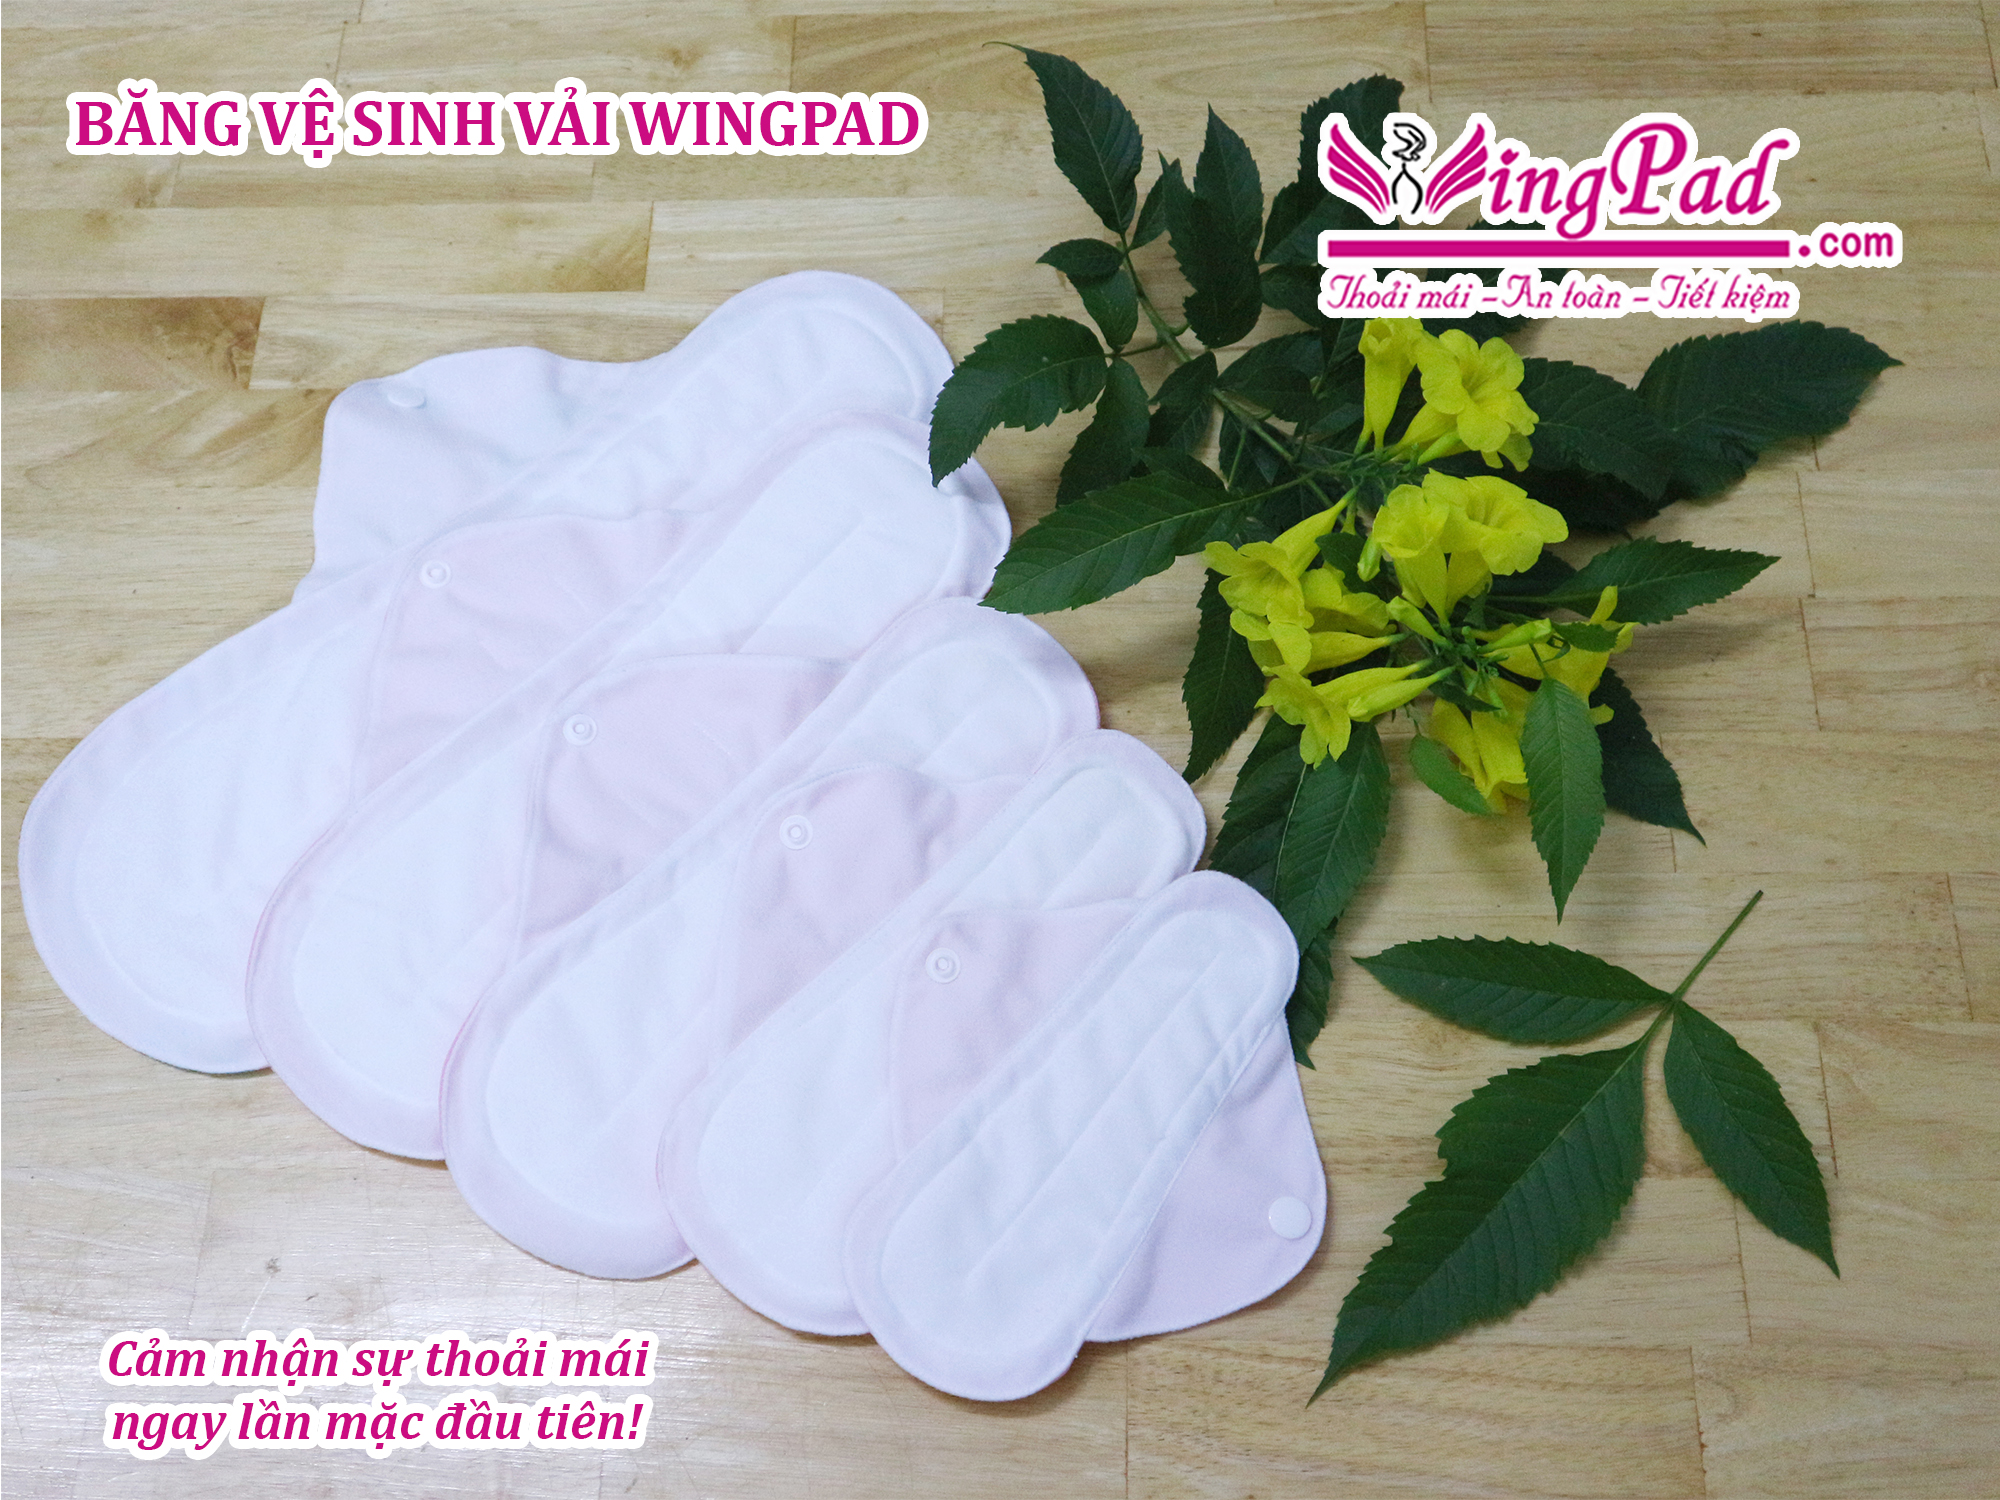 Băng vệ sinh vải WingPad